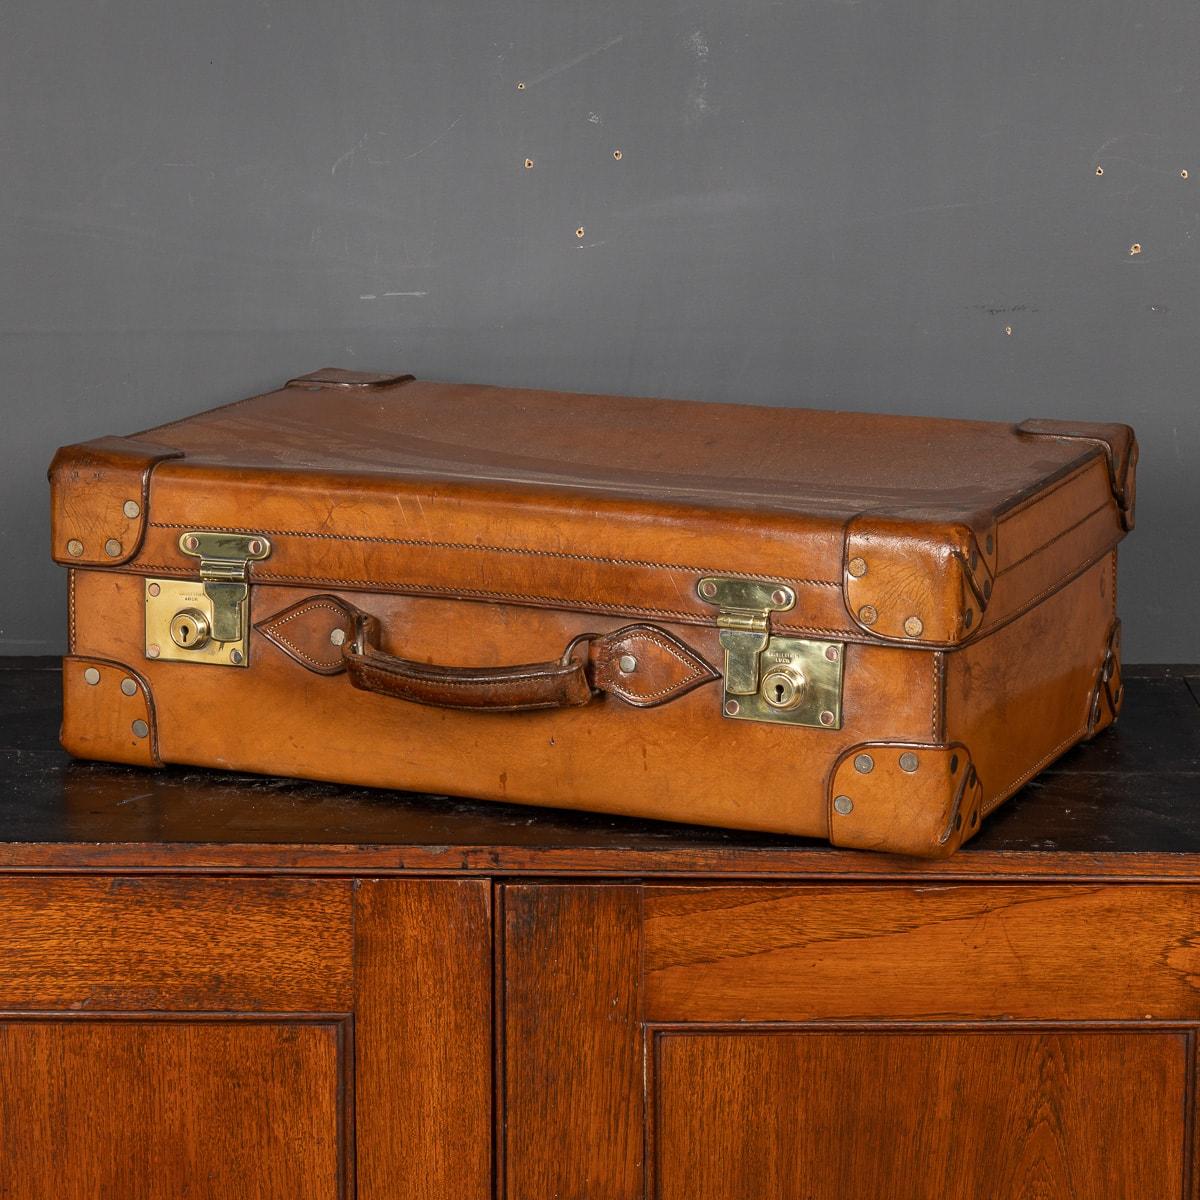 Ancienne valise couverte en peau de cheval, fabriquée en Grande-Bretagne au début du 20e siècle. Le cuir présente des traces d'usure mais reste souple. Monté avec des ferrures en laiton, il respire le charme et l'élégance. Une pièce exceptionnelle